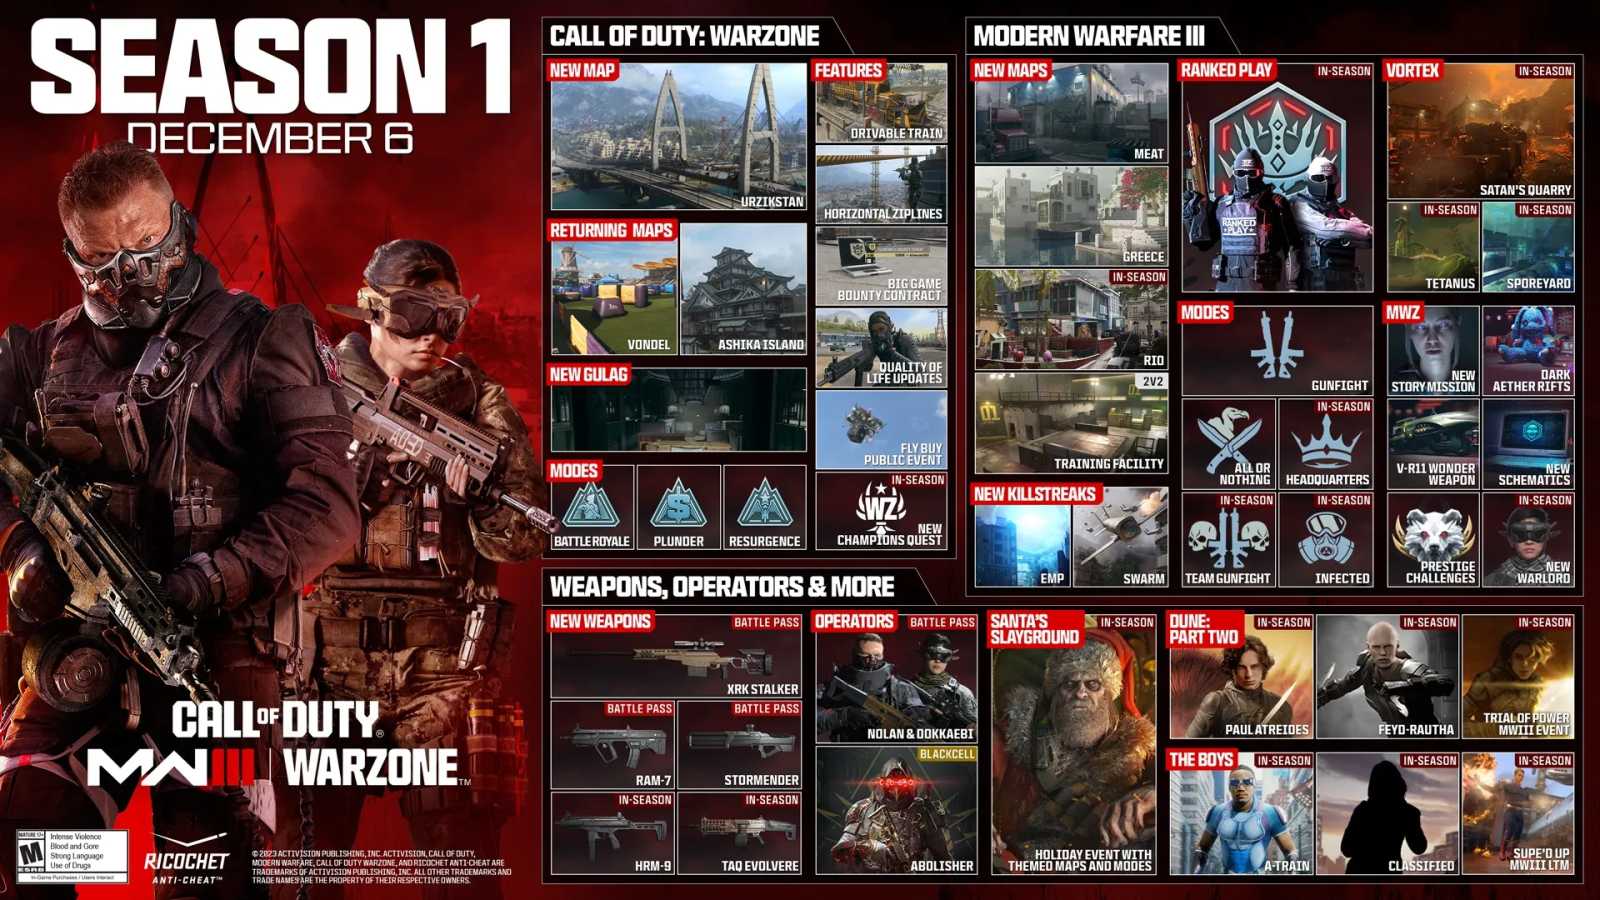 První sezóna pro Call of Duty: Modern Warfare III klepe na dveře